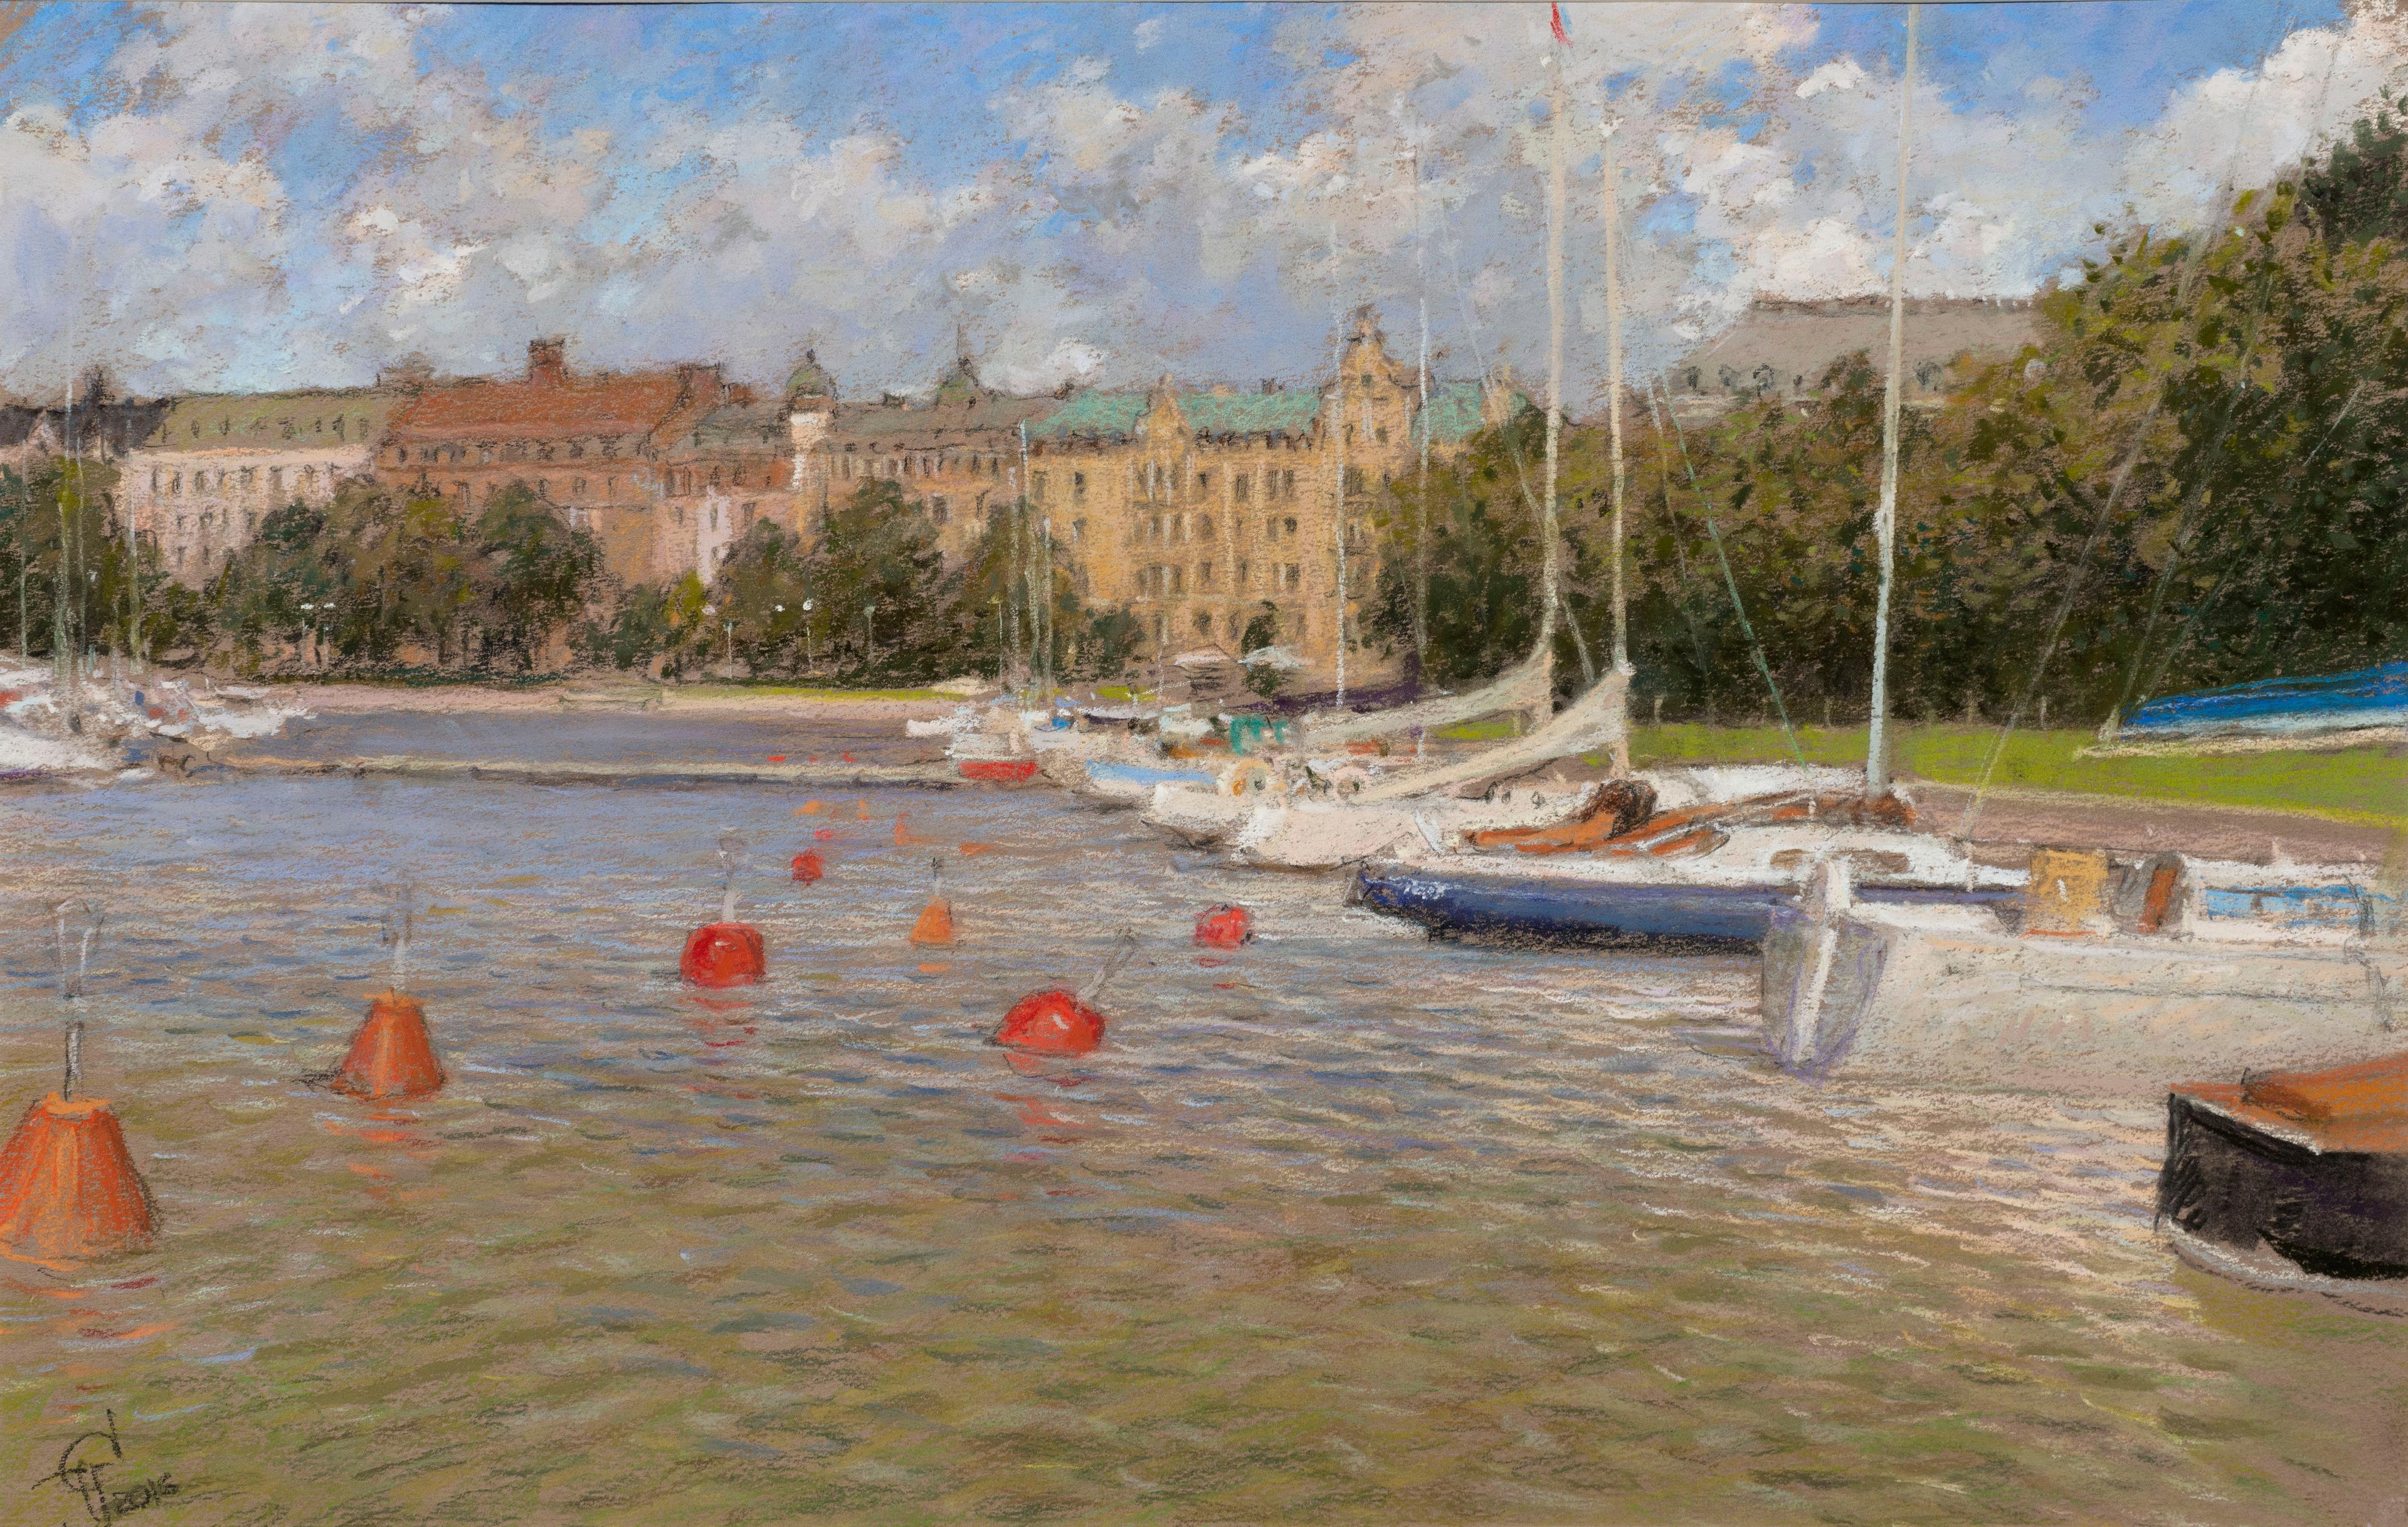 Хельсинки. Original modern art painting